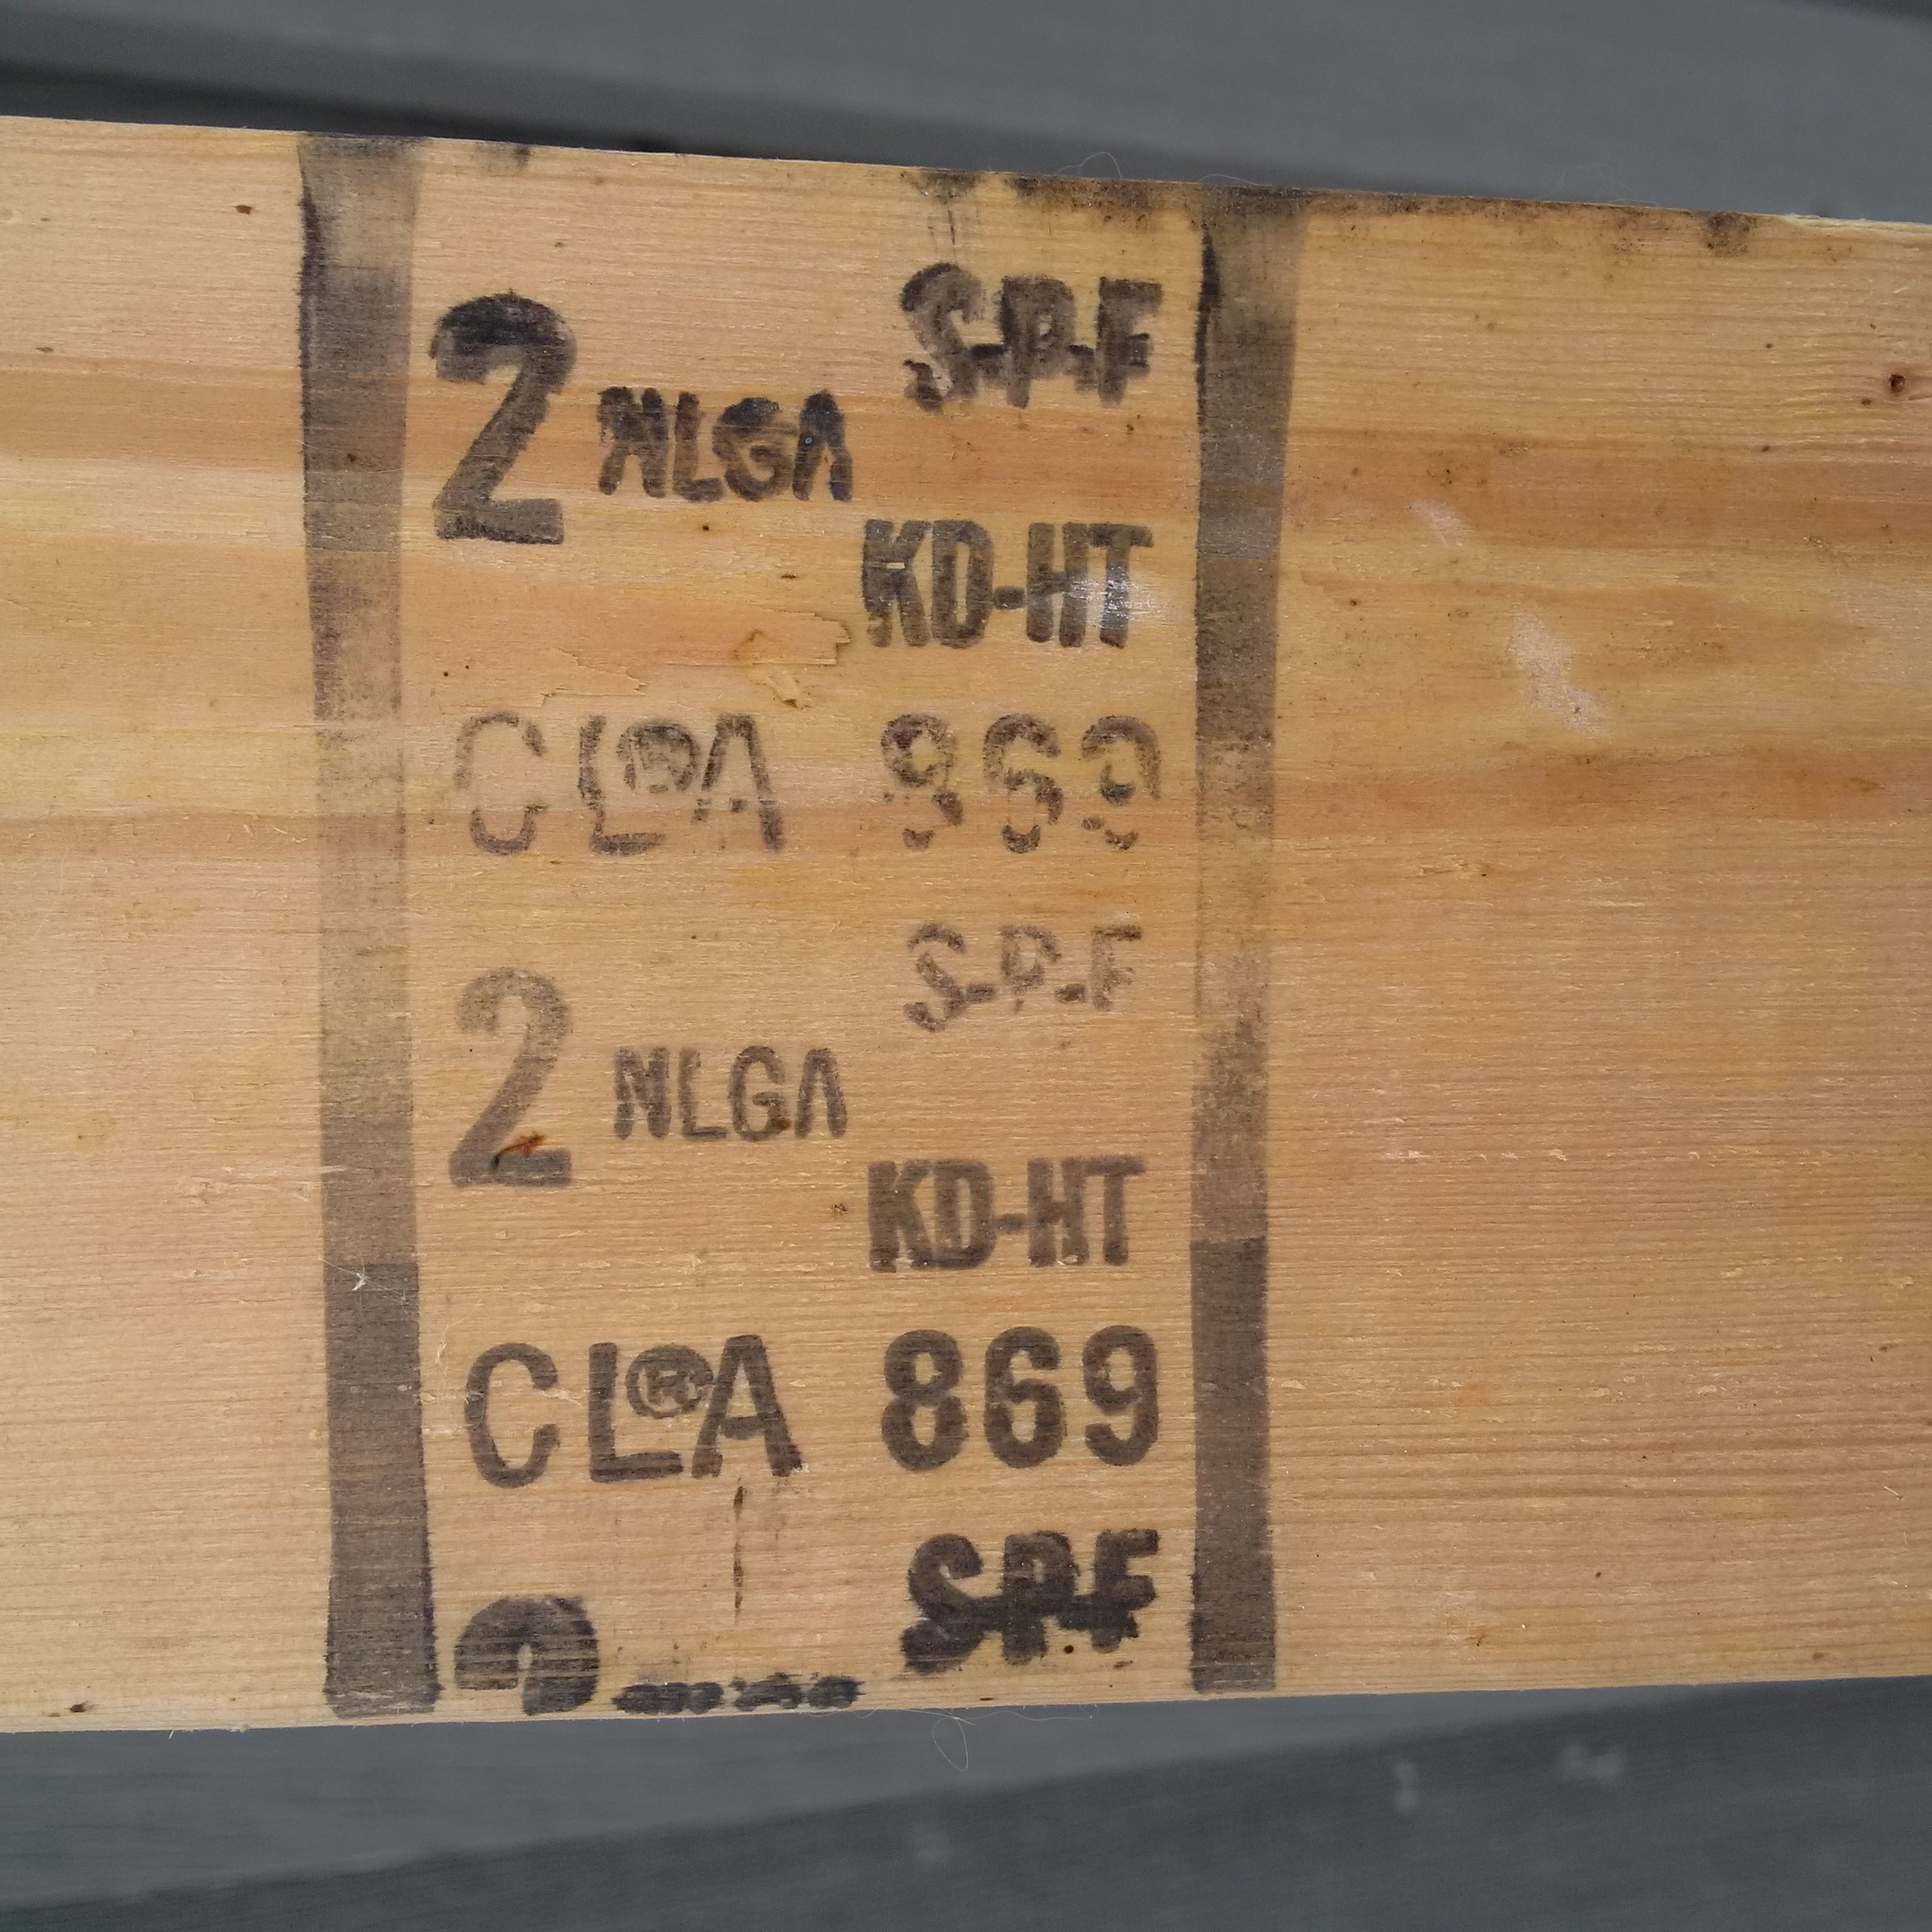 Cette figure montre un exemple d’estampillage sur du bois. Ces sciages ont été classés conformément aux règles de classement de la NLGA par l’'Association canadienne de l’'industrie du bois et il a été produit par la scierie numéro 869. Ce bois d’'œuvre est constitué d’'épinette-sapin-pin, il a été séché au séchoir, traité à la chaleur et s’'est vu attribuer une classe 2.